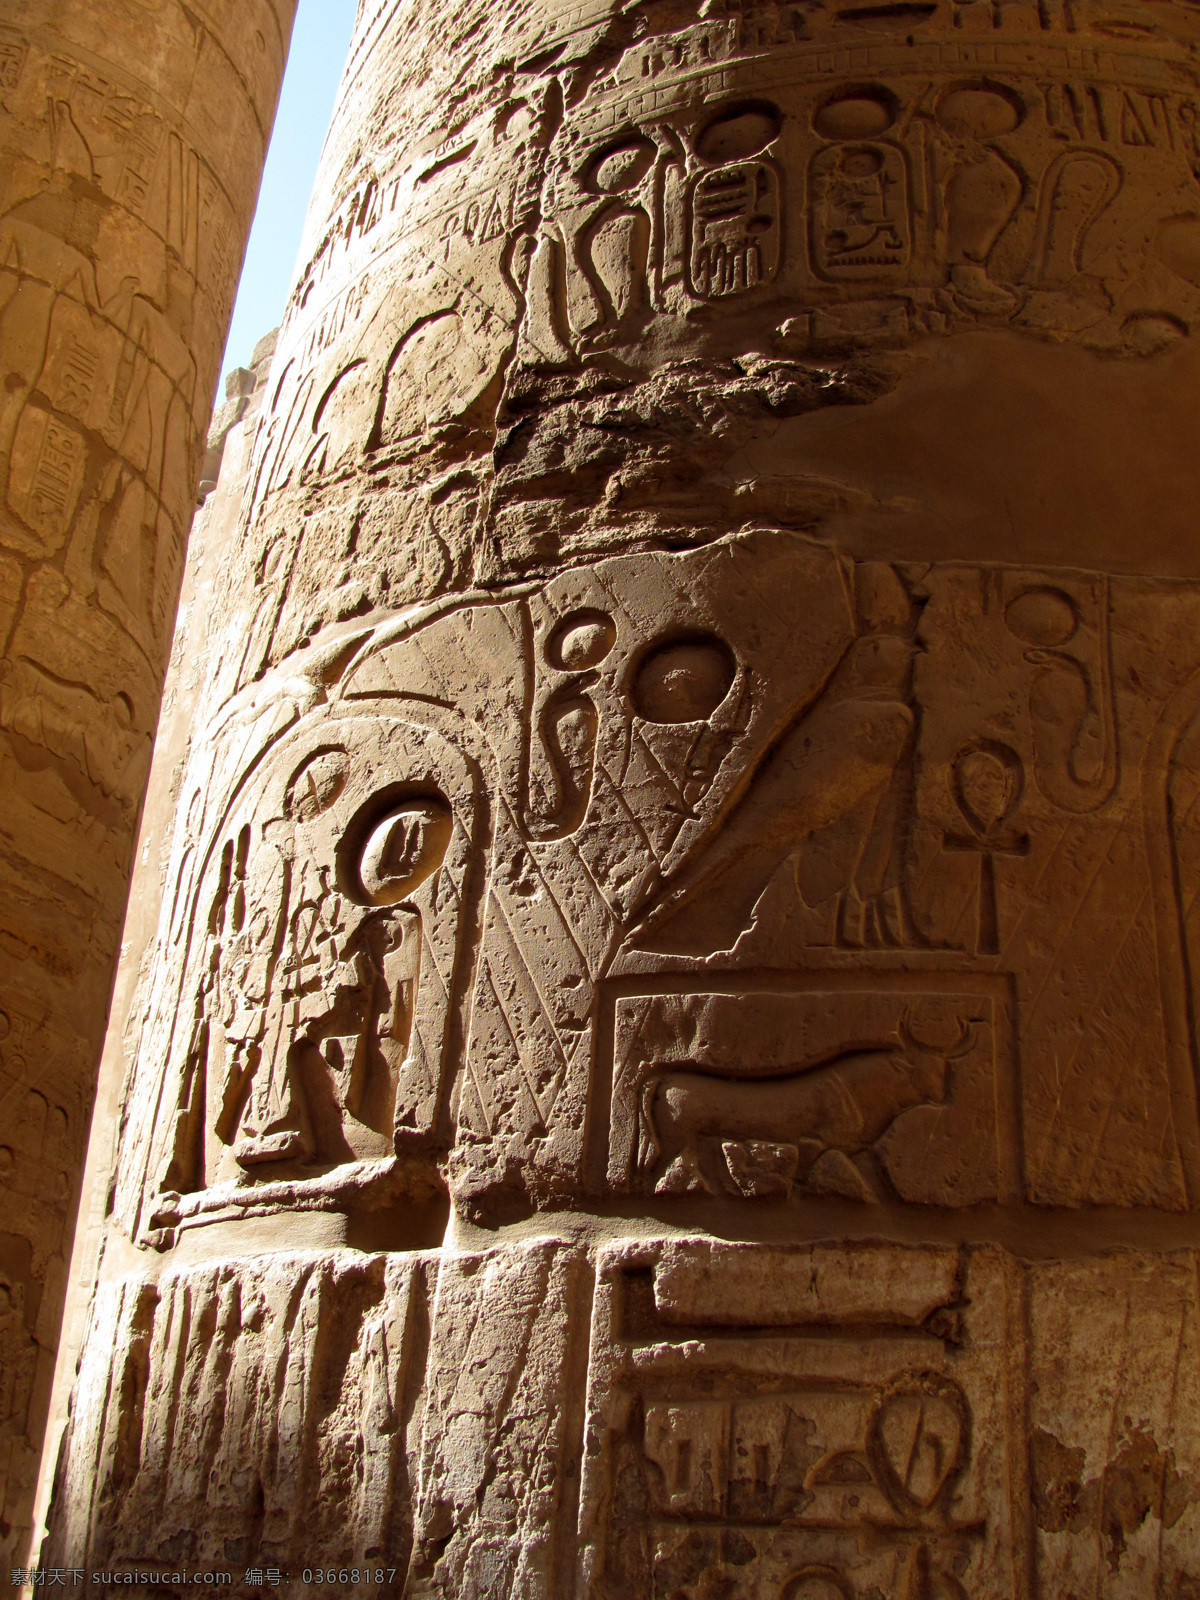 埃及 凯尔 奈克 神庙 凯尔奈克神庙 太阳神阿蒙神 崇拜中心 大列柱 浮雕精细 国外旅游 旅游摄影